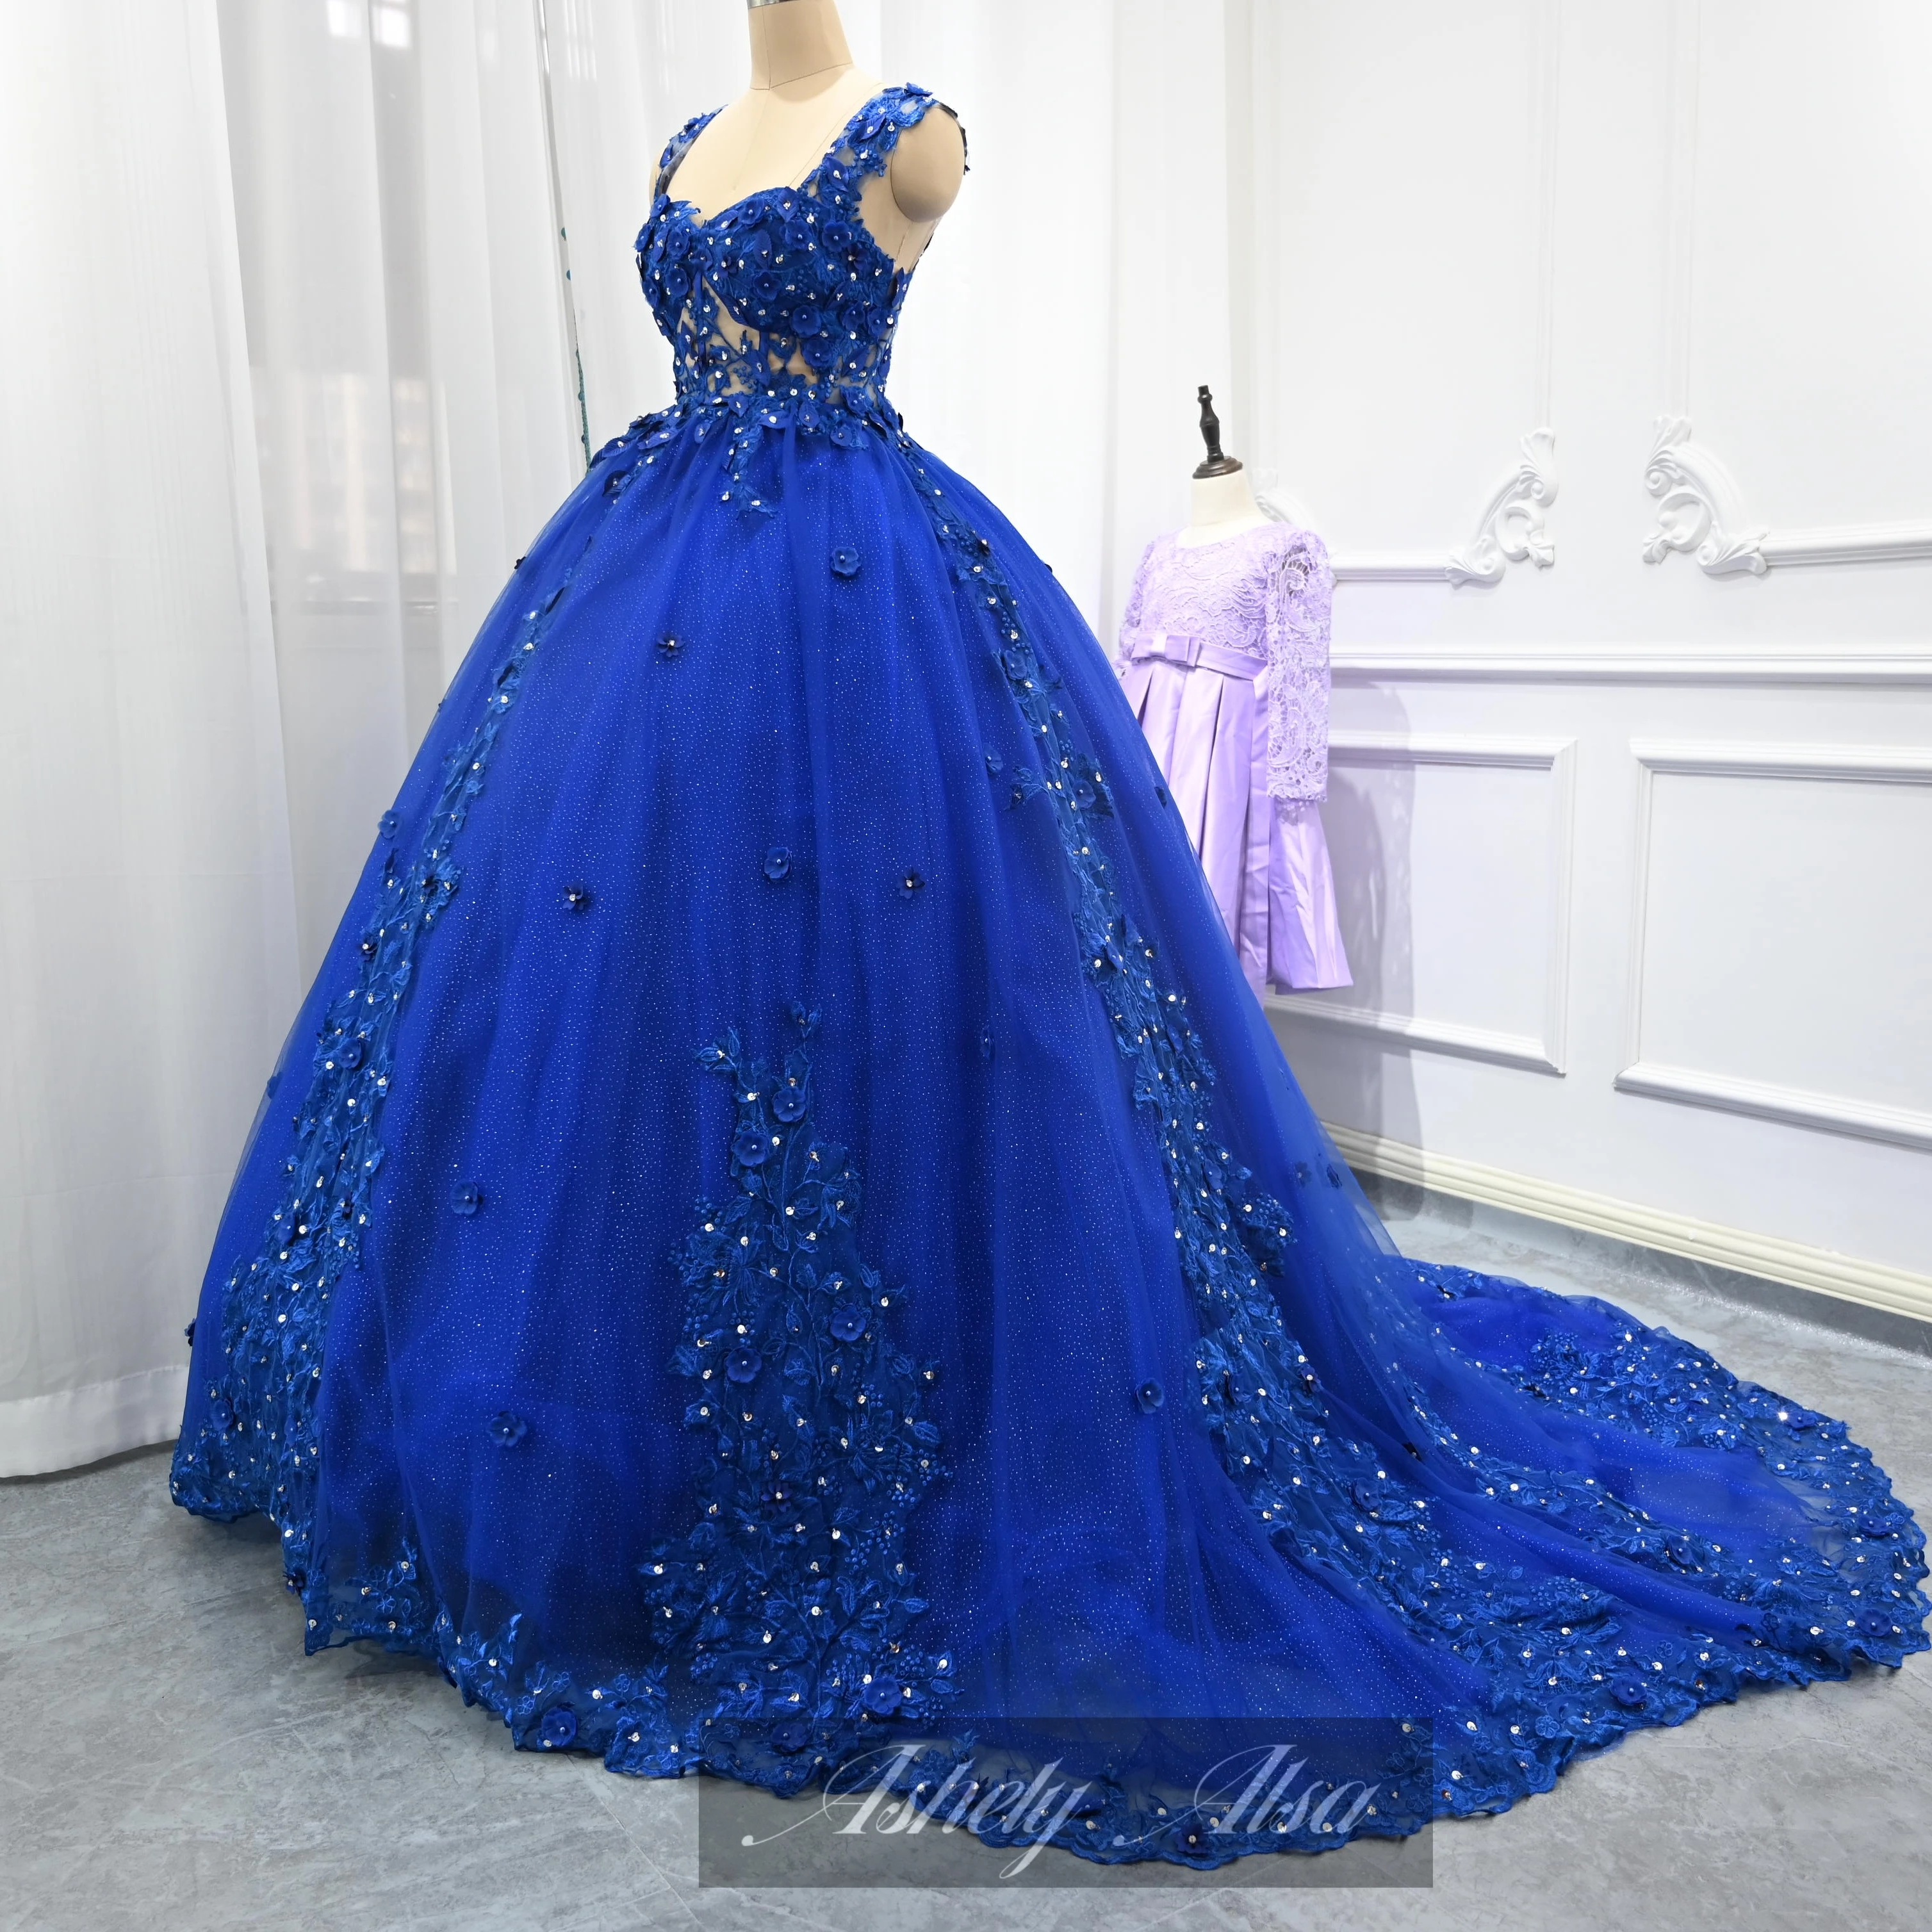 Ashely Alsa Blue Quinceanera Платья 3D цветок Принцесса 16 лет Бальные платья для девочек Официальная вечеринка Платье для выпускного вечера Vestidos De 15 Anos Изображение 4